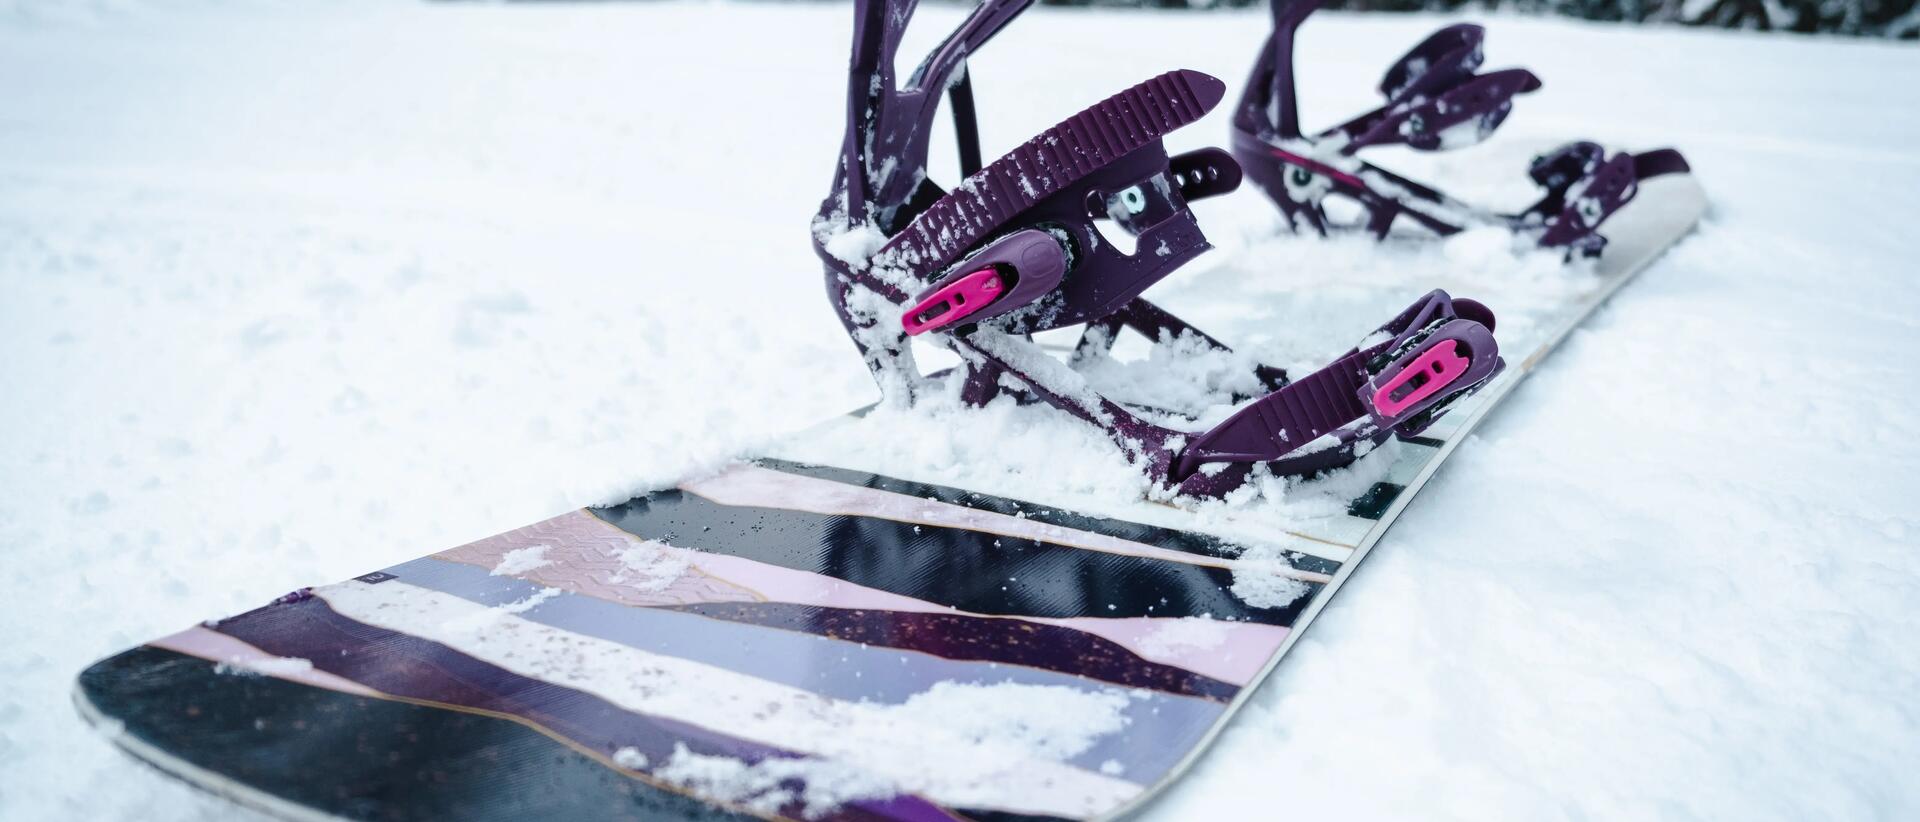 deska snowboardowa z wiązaniami leżąca na śniegu